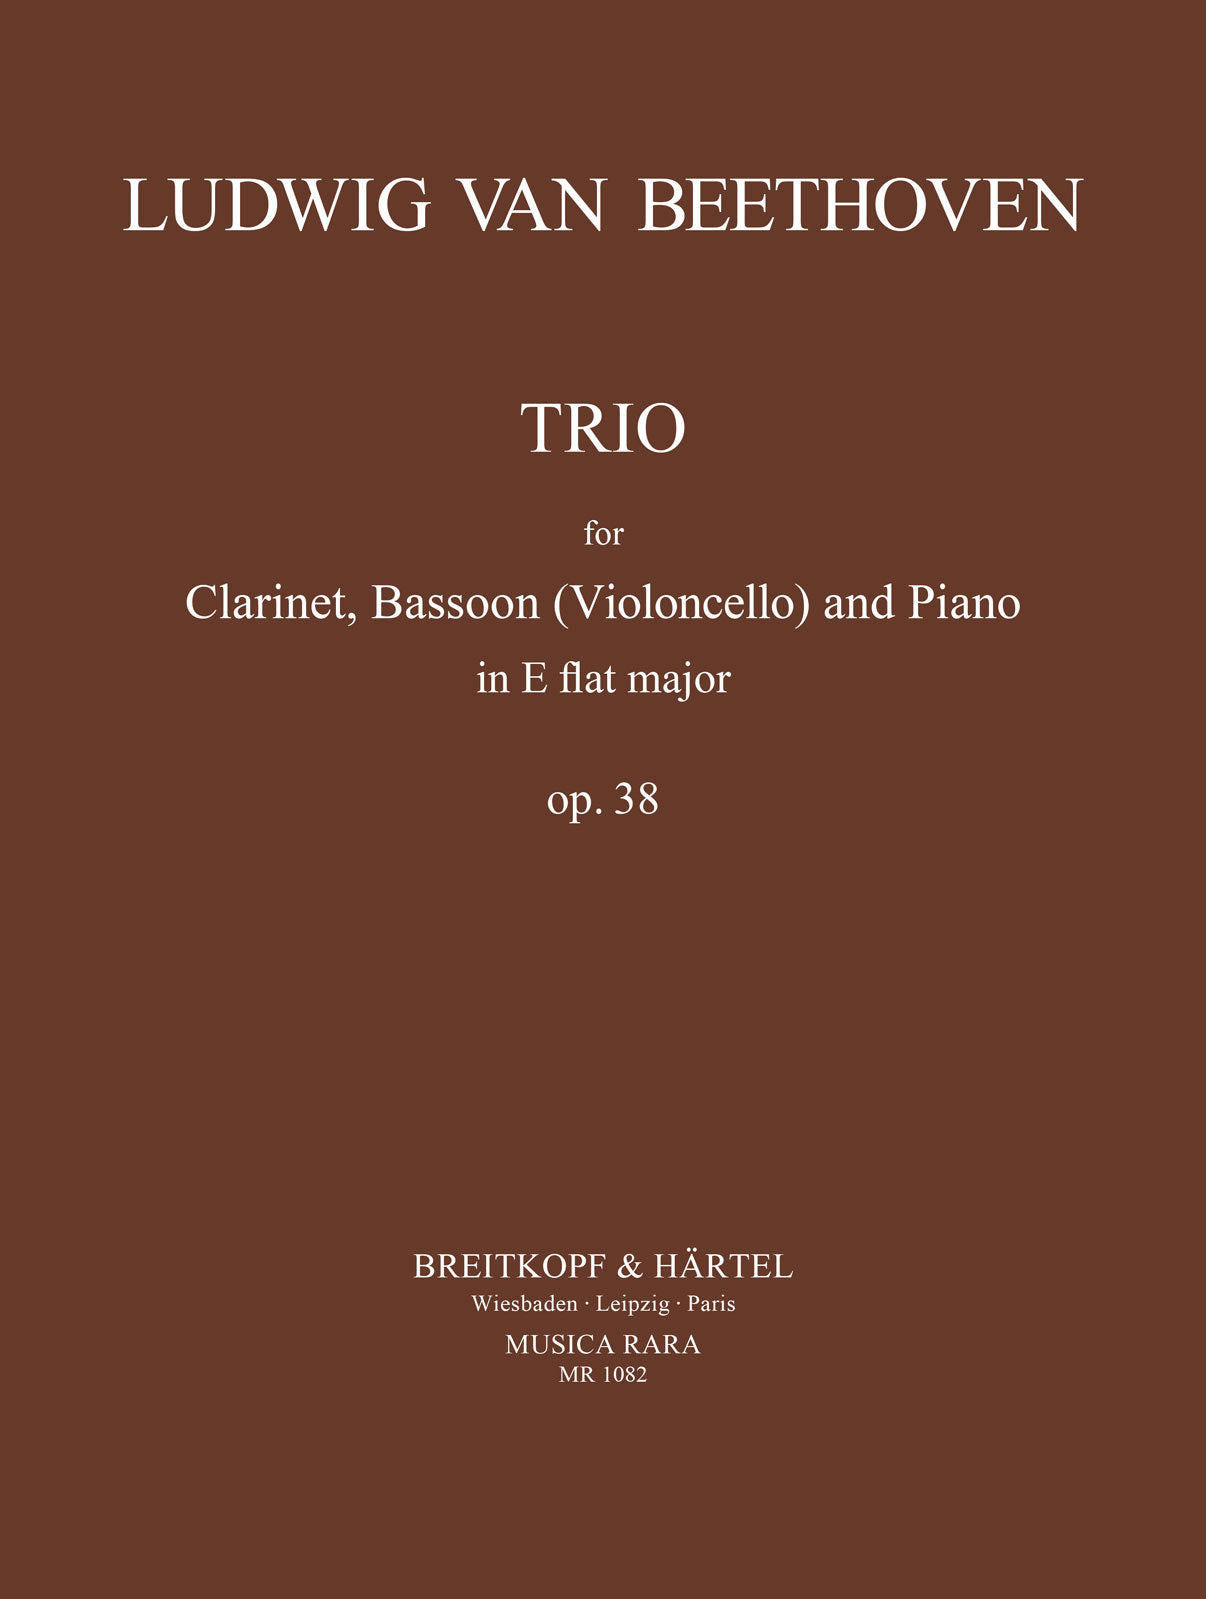 Beethoven: Trio for Piano, Clarinet (Violin), Cello in E-flat Major, Op. 38